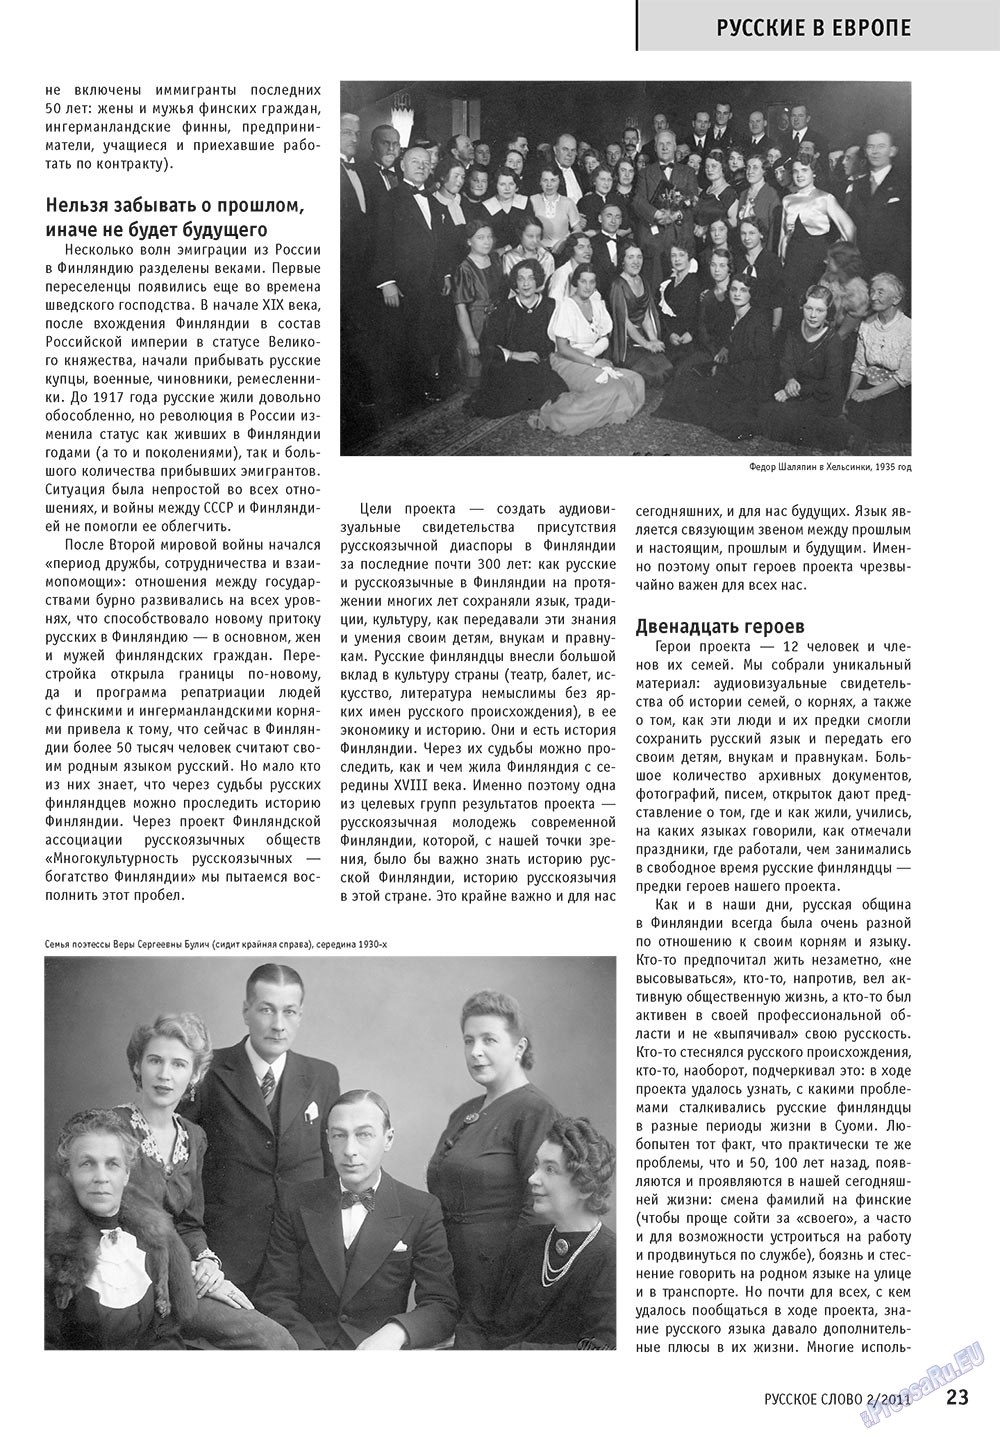 Русское слово, журнал. 2011 №2 стр.25